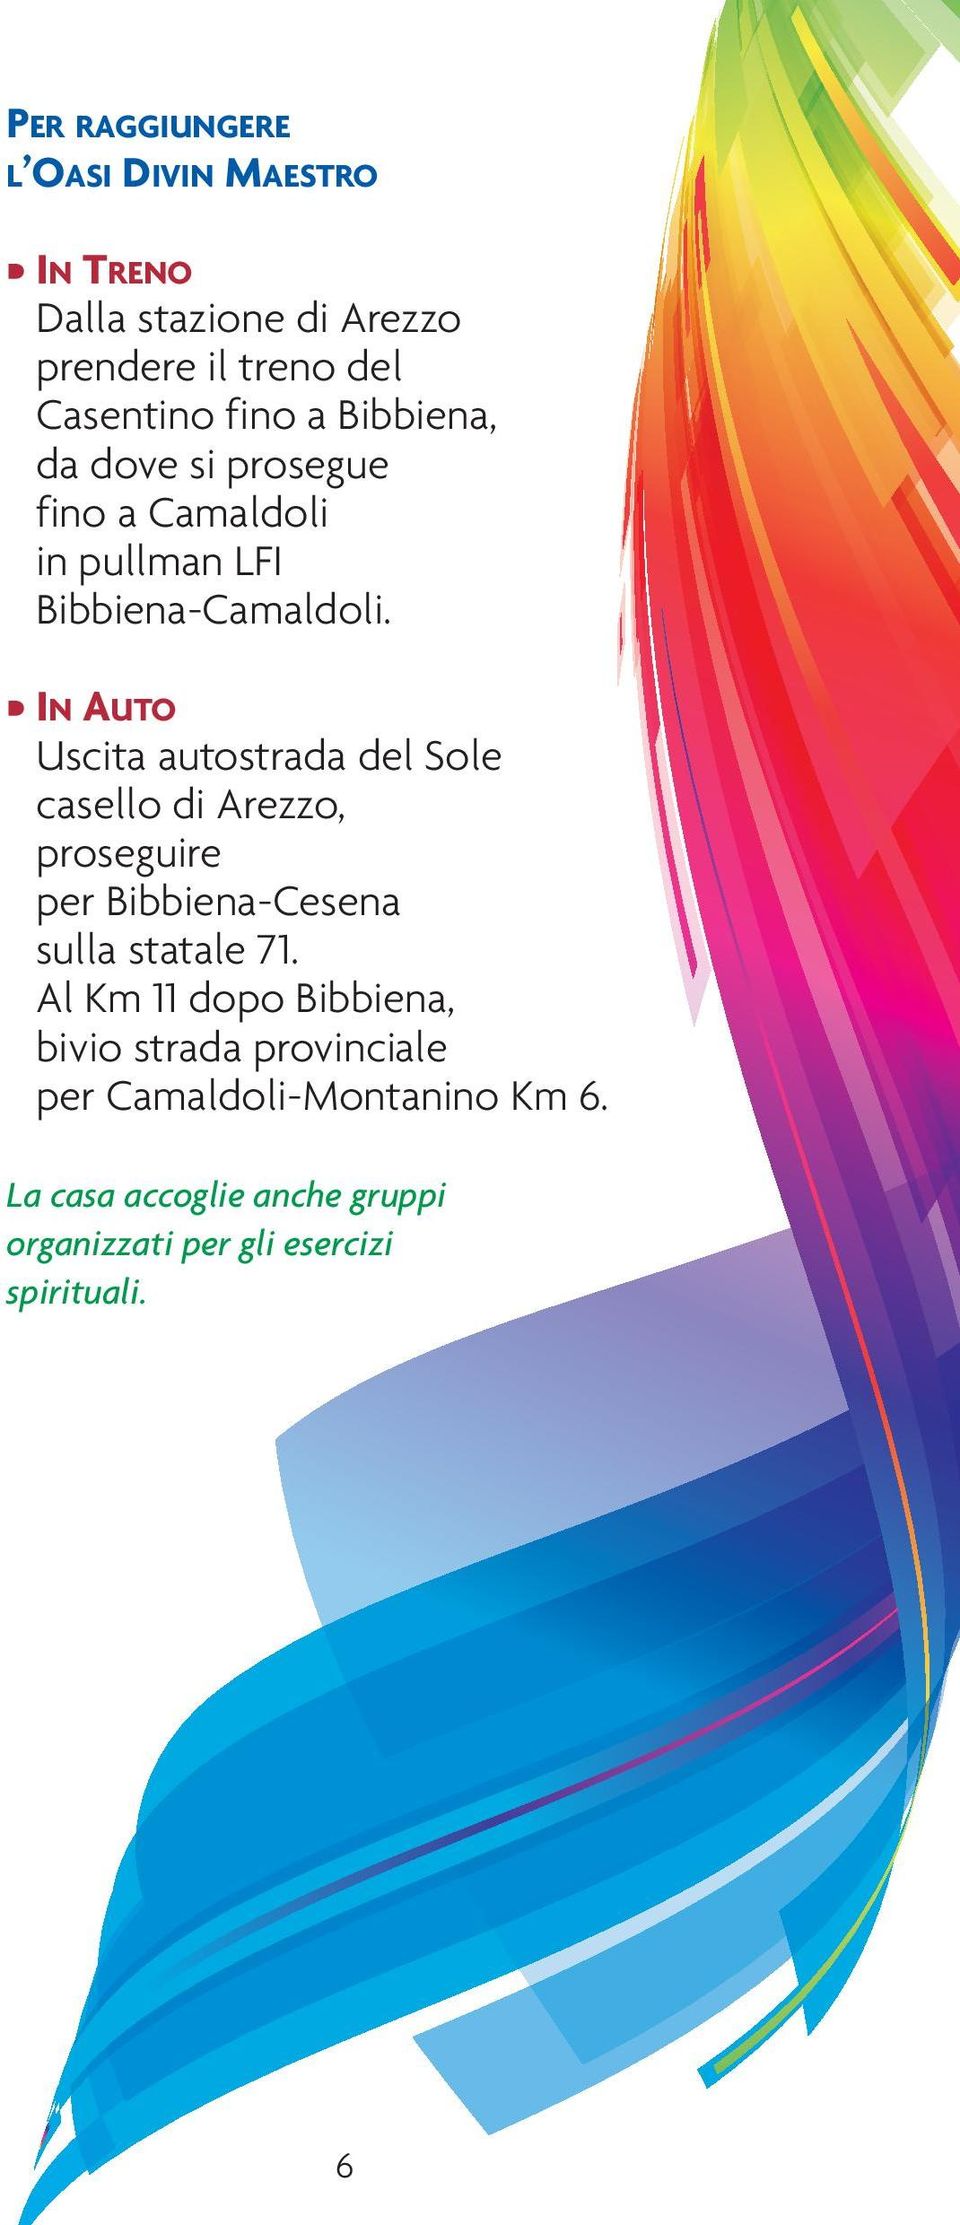 IN AUTO Uscita autostrada del Sole casello di Arezzo, proseguire per Bibbiena-Cesena sulla statale 71.